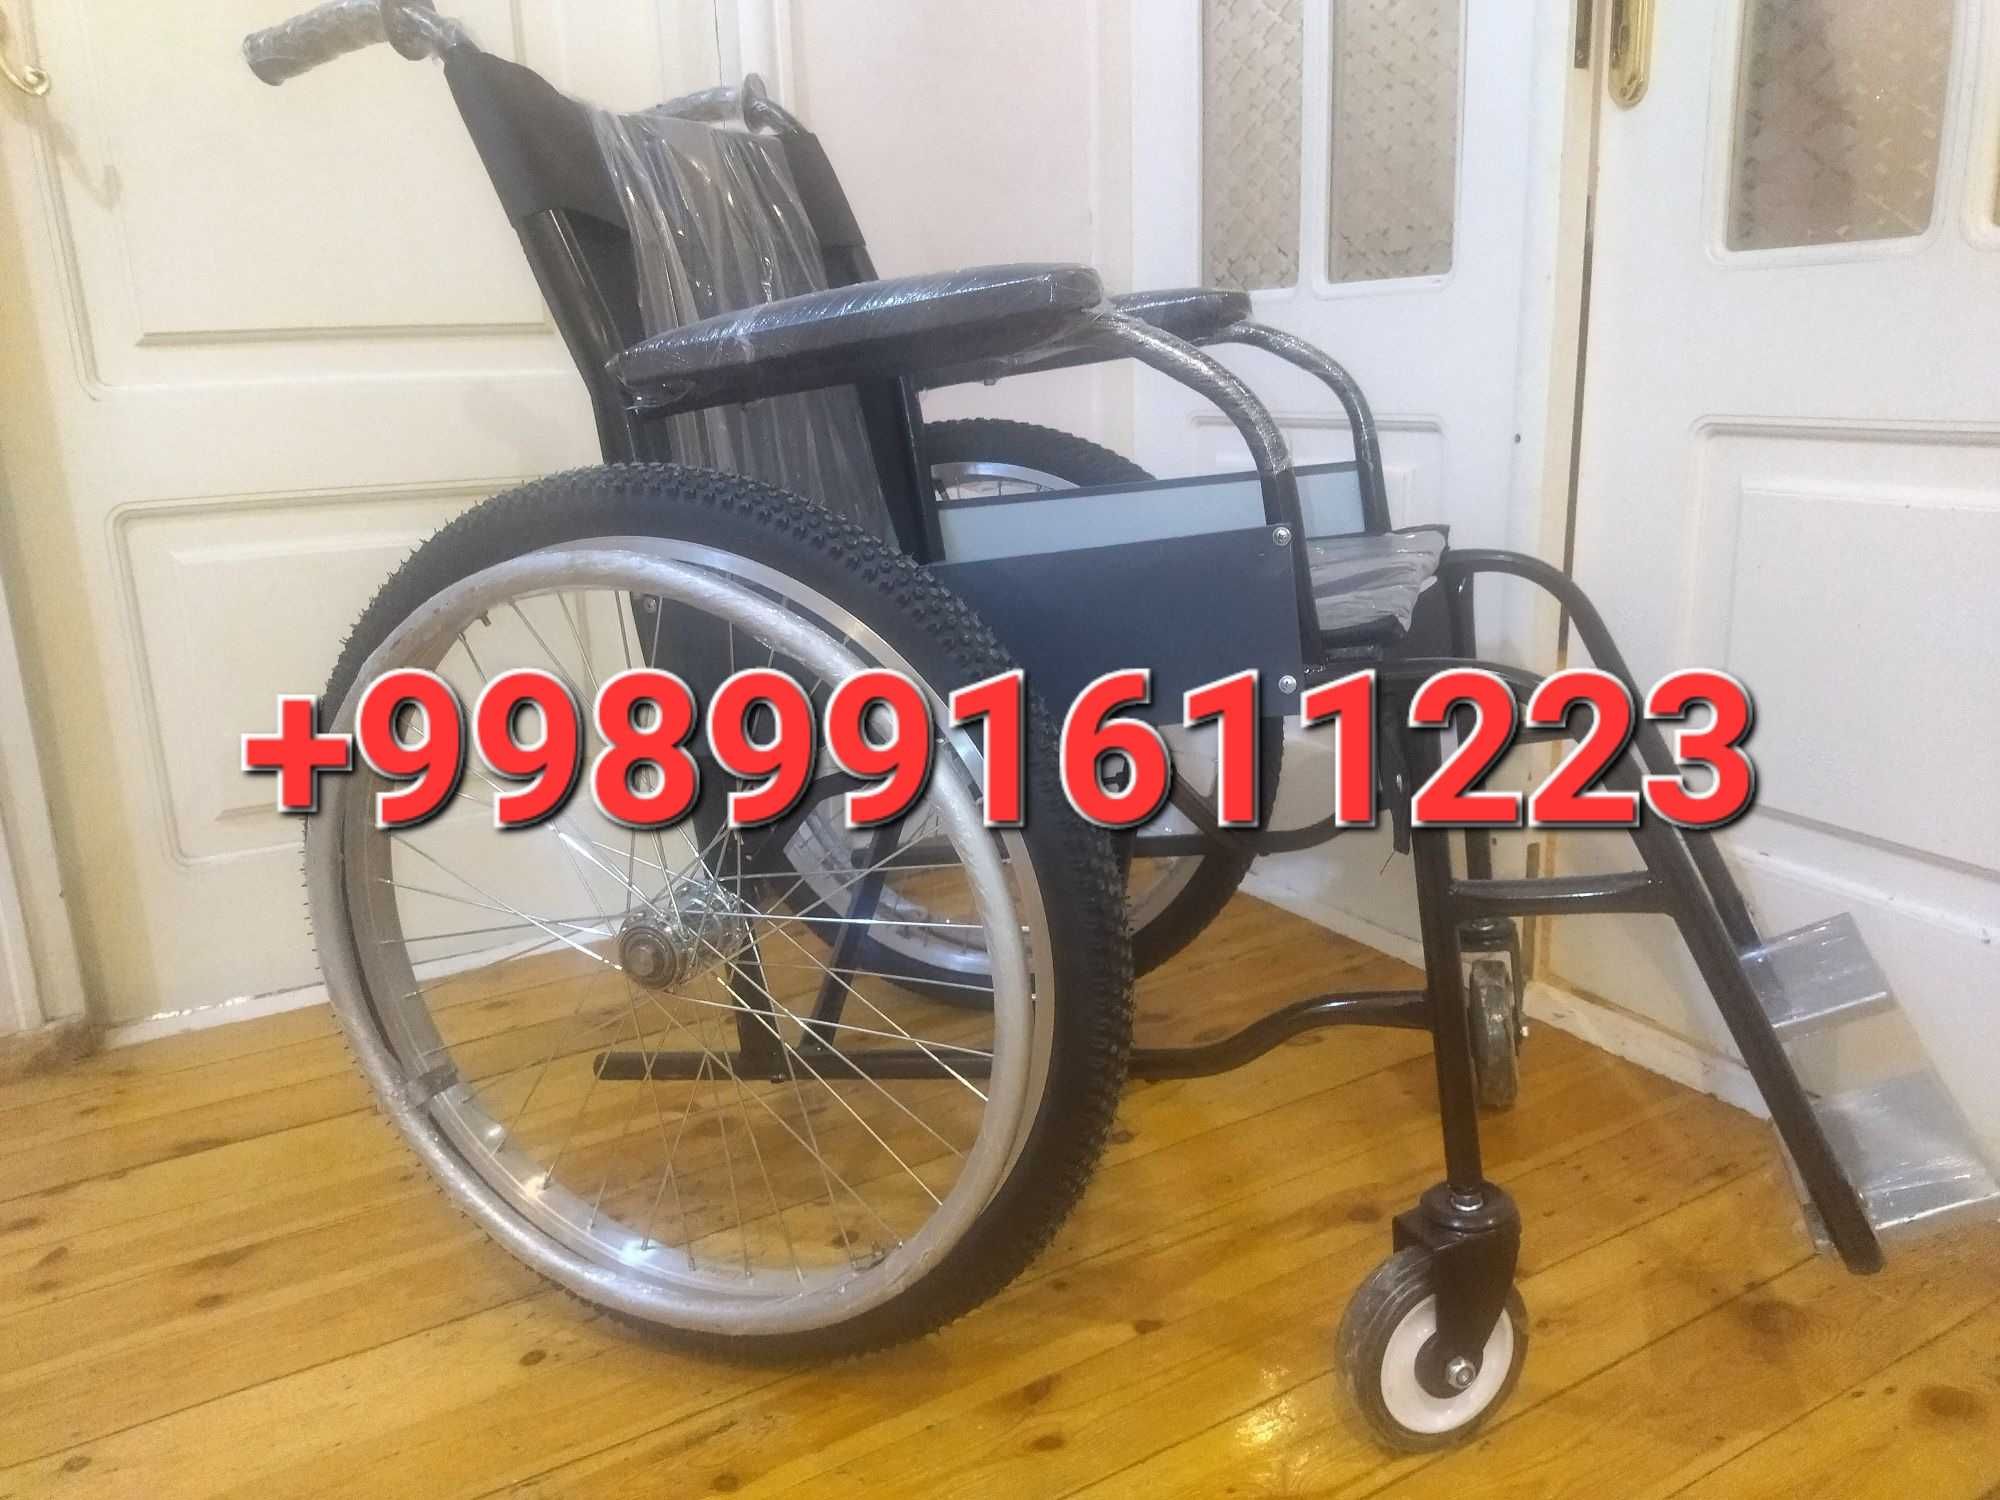 6
Nogironlar aravasi инвалидная коляска

929655